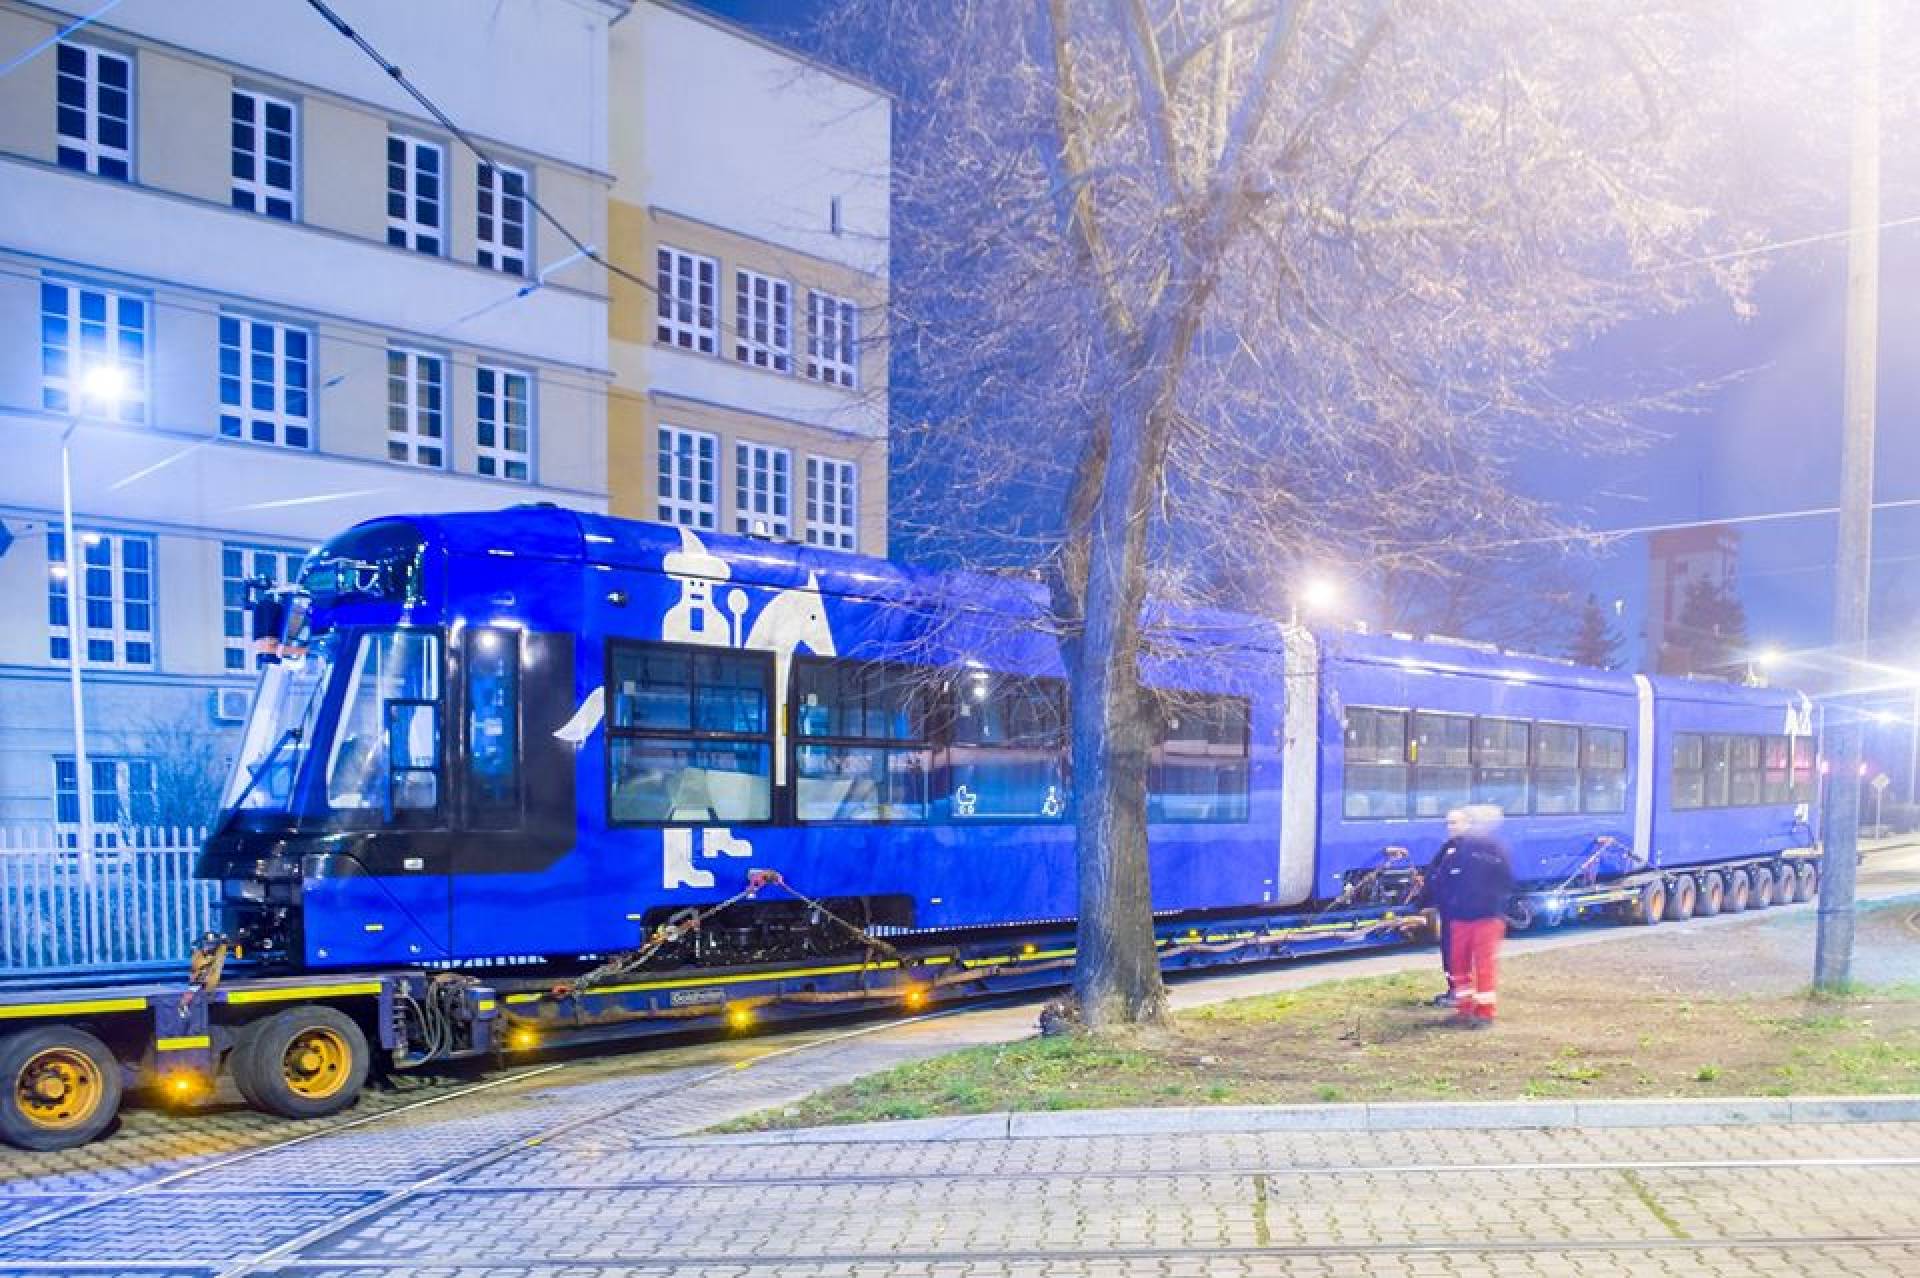 Wyjątkowy tramwaj dotarł do Krakowa, pojedzie bez dostępu do sieci